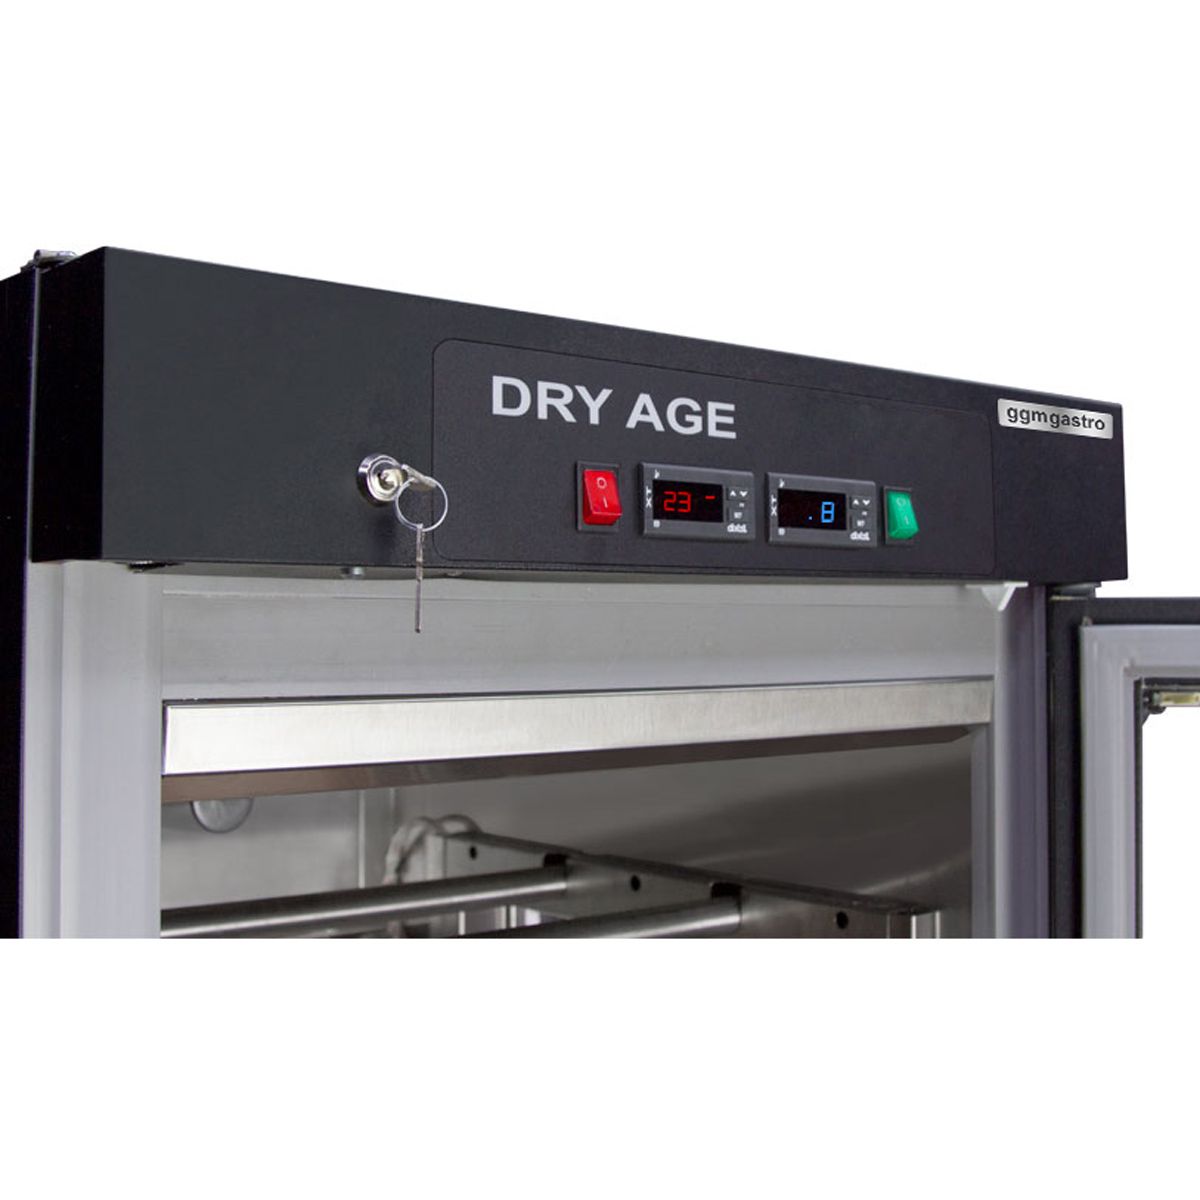 Dry Age Reifeschrank GDMA120 - Gastro-Geräte zum Bestpreis